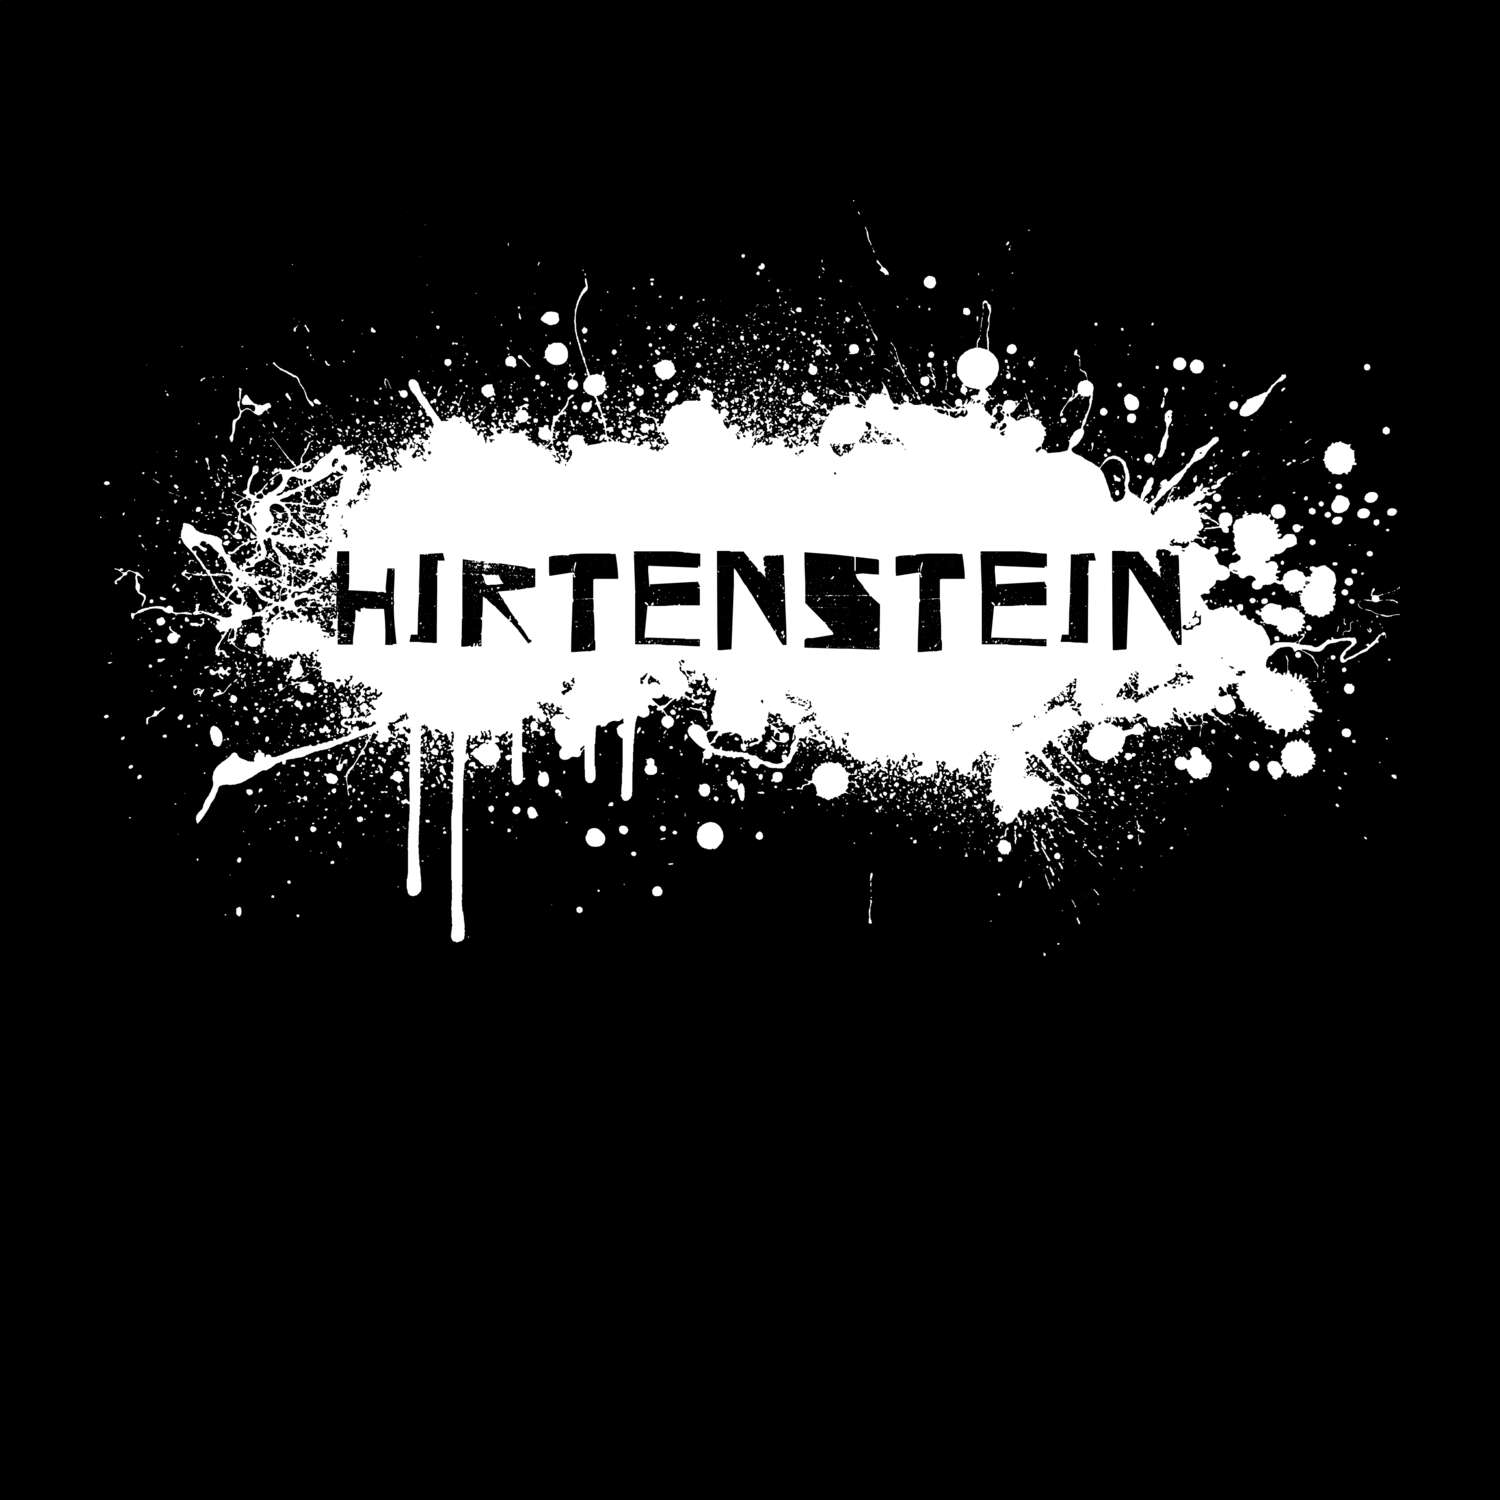 Hirtenstein T-Shirt »Paint Splash Punk«